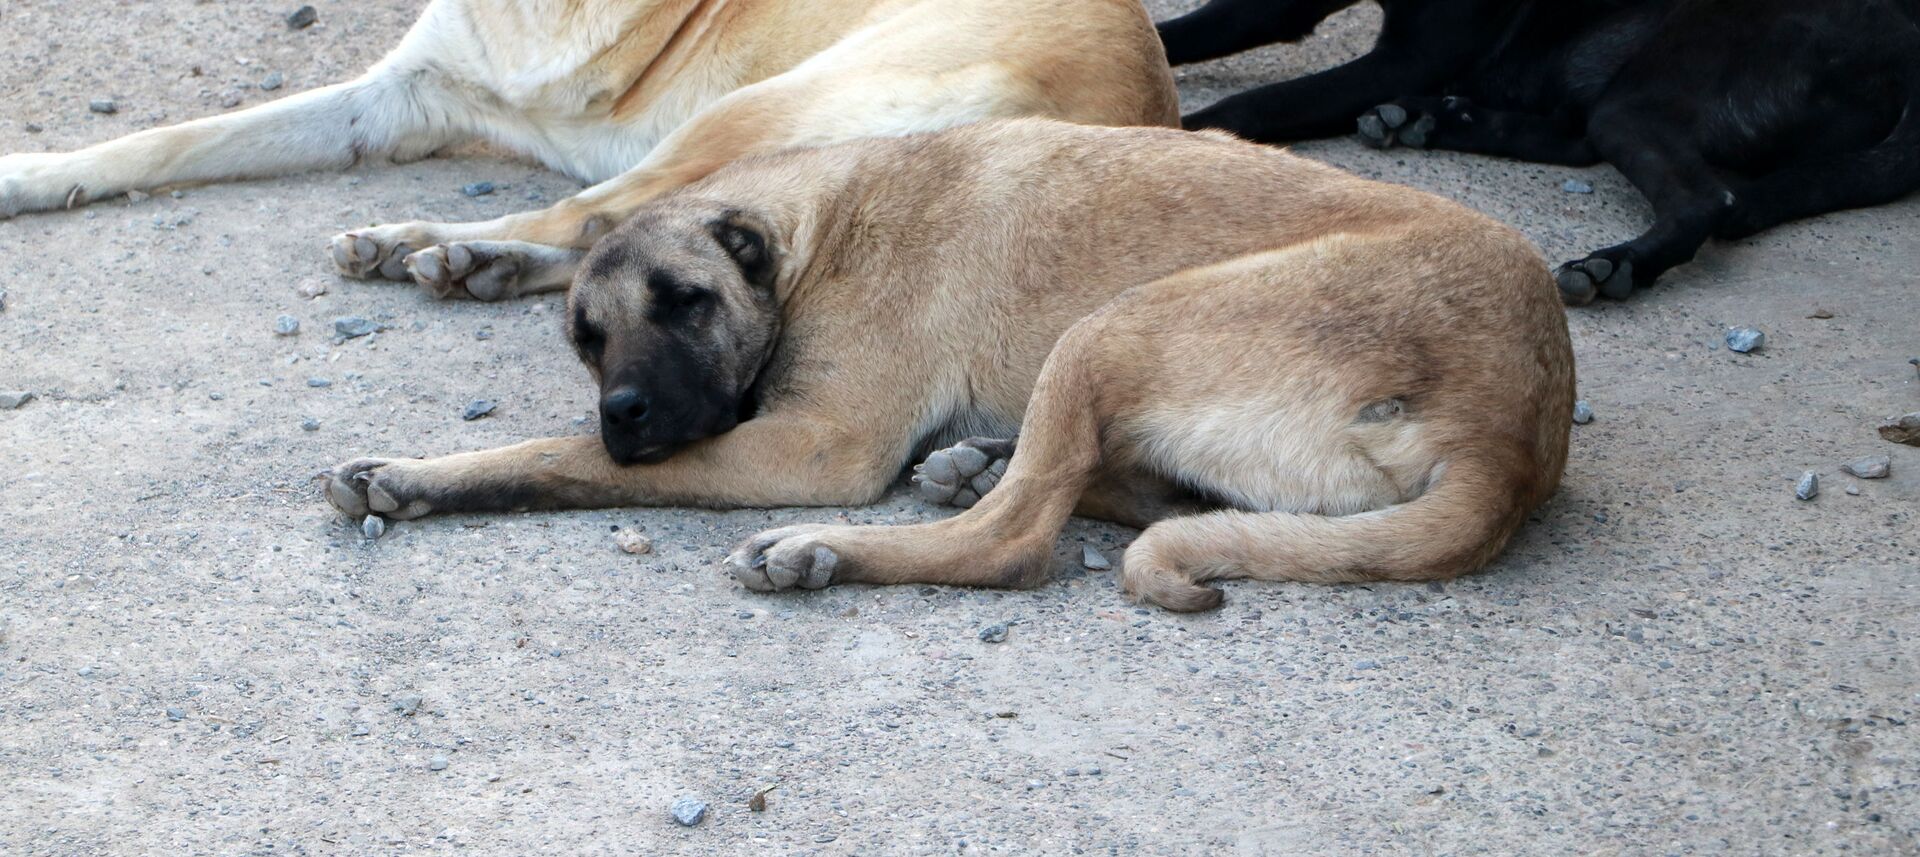 Ölmek üzereyken bulunan köpek, hayvanseverlerin bakımıyla sağlığına kavuştu - Sputnik Türkiye, 1920, 21.03.2021